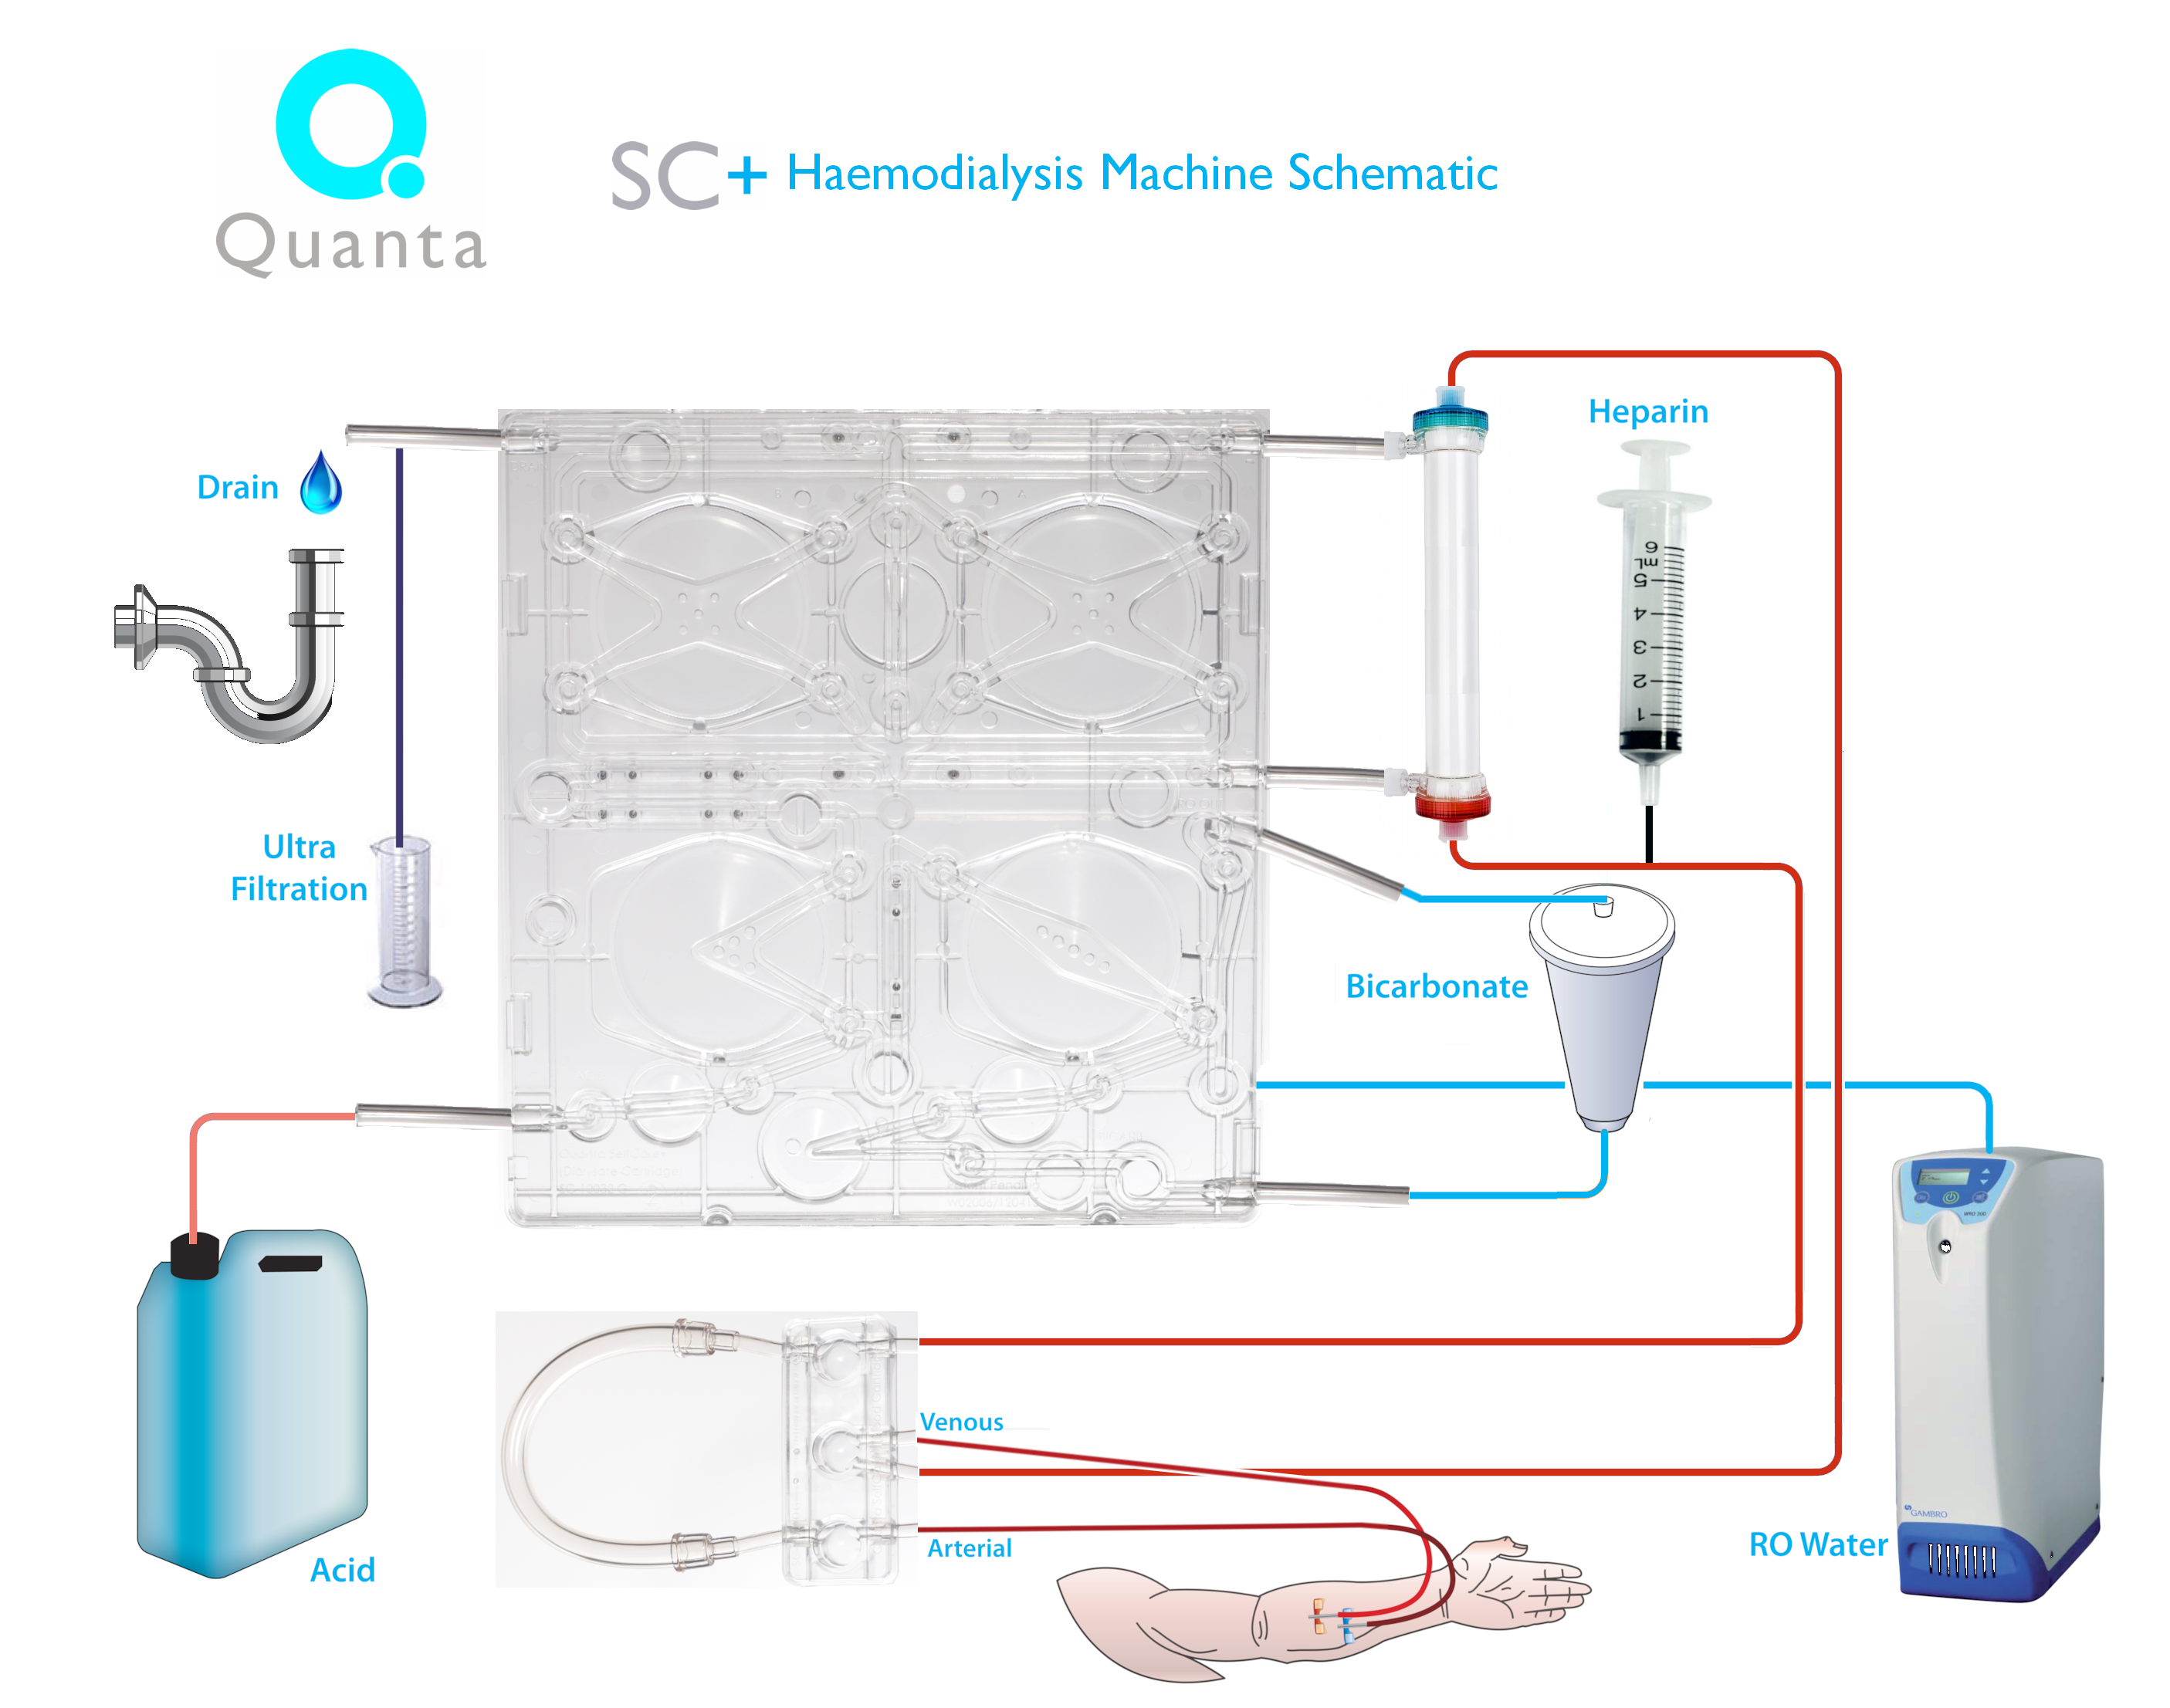 Quanta SC+ Haemodialysis Machine Schematic